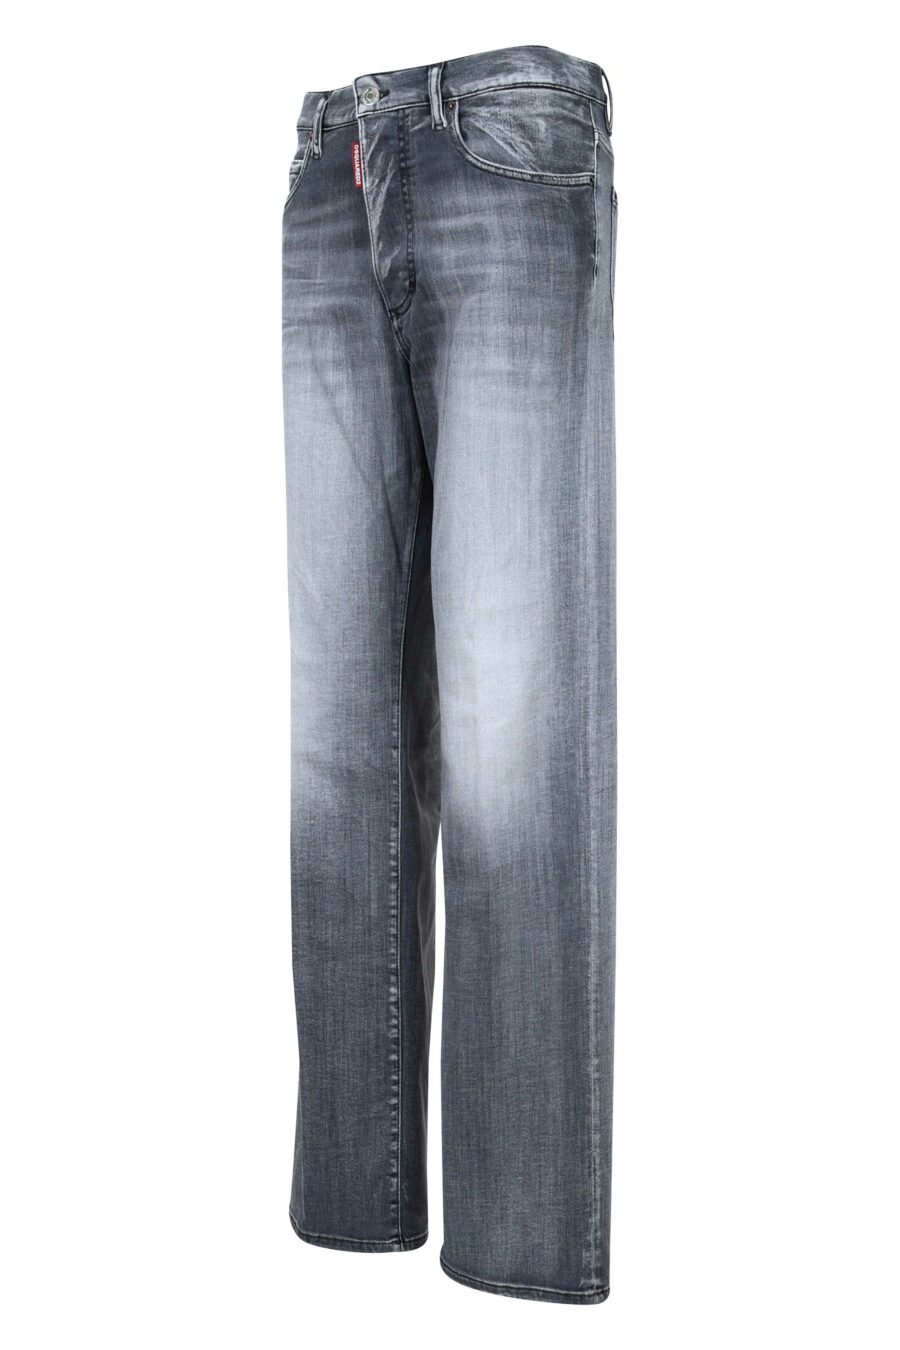 Jeans "San Diego jean" schwarz getragen - 8054148230845 1